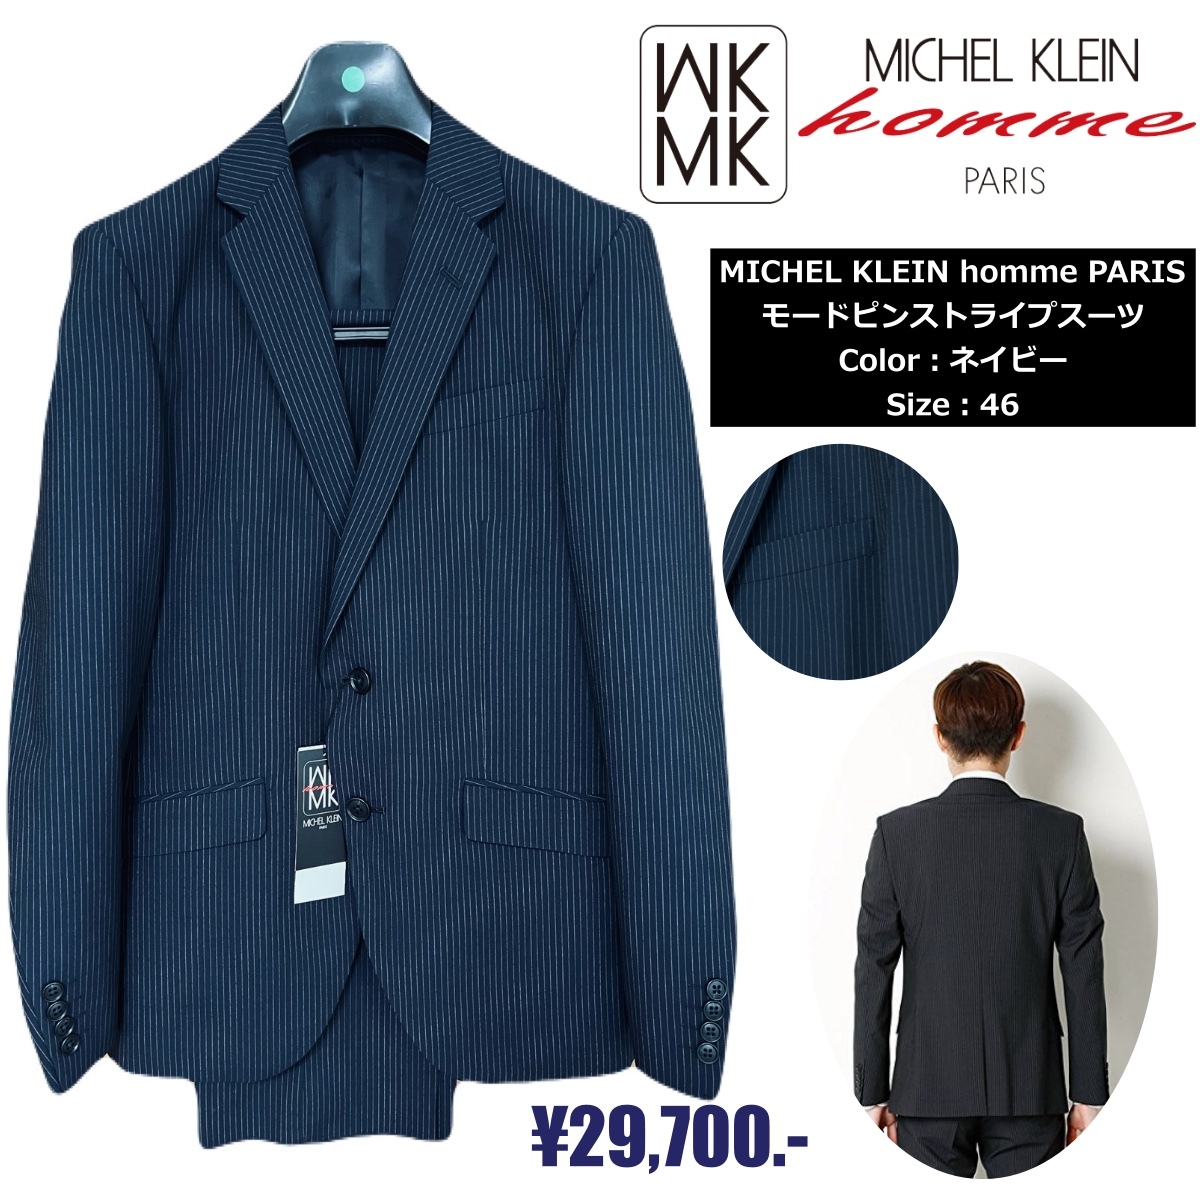 MICHEL KLEIN homme / MK homme PARIS モードピンストライプスーツ／ネイビー／サイズ：46